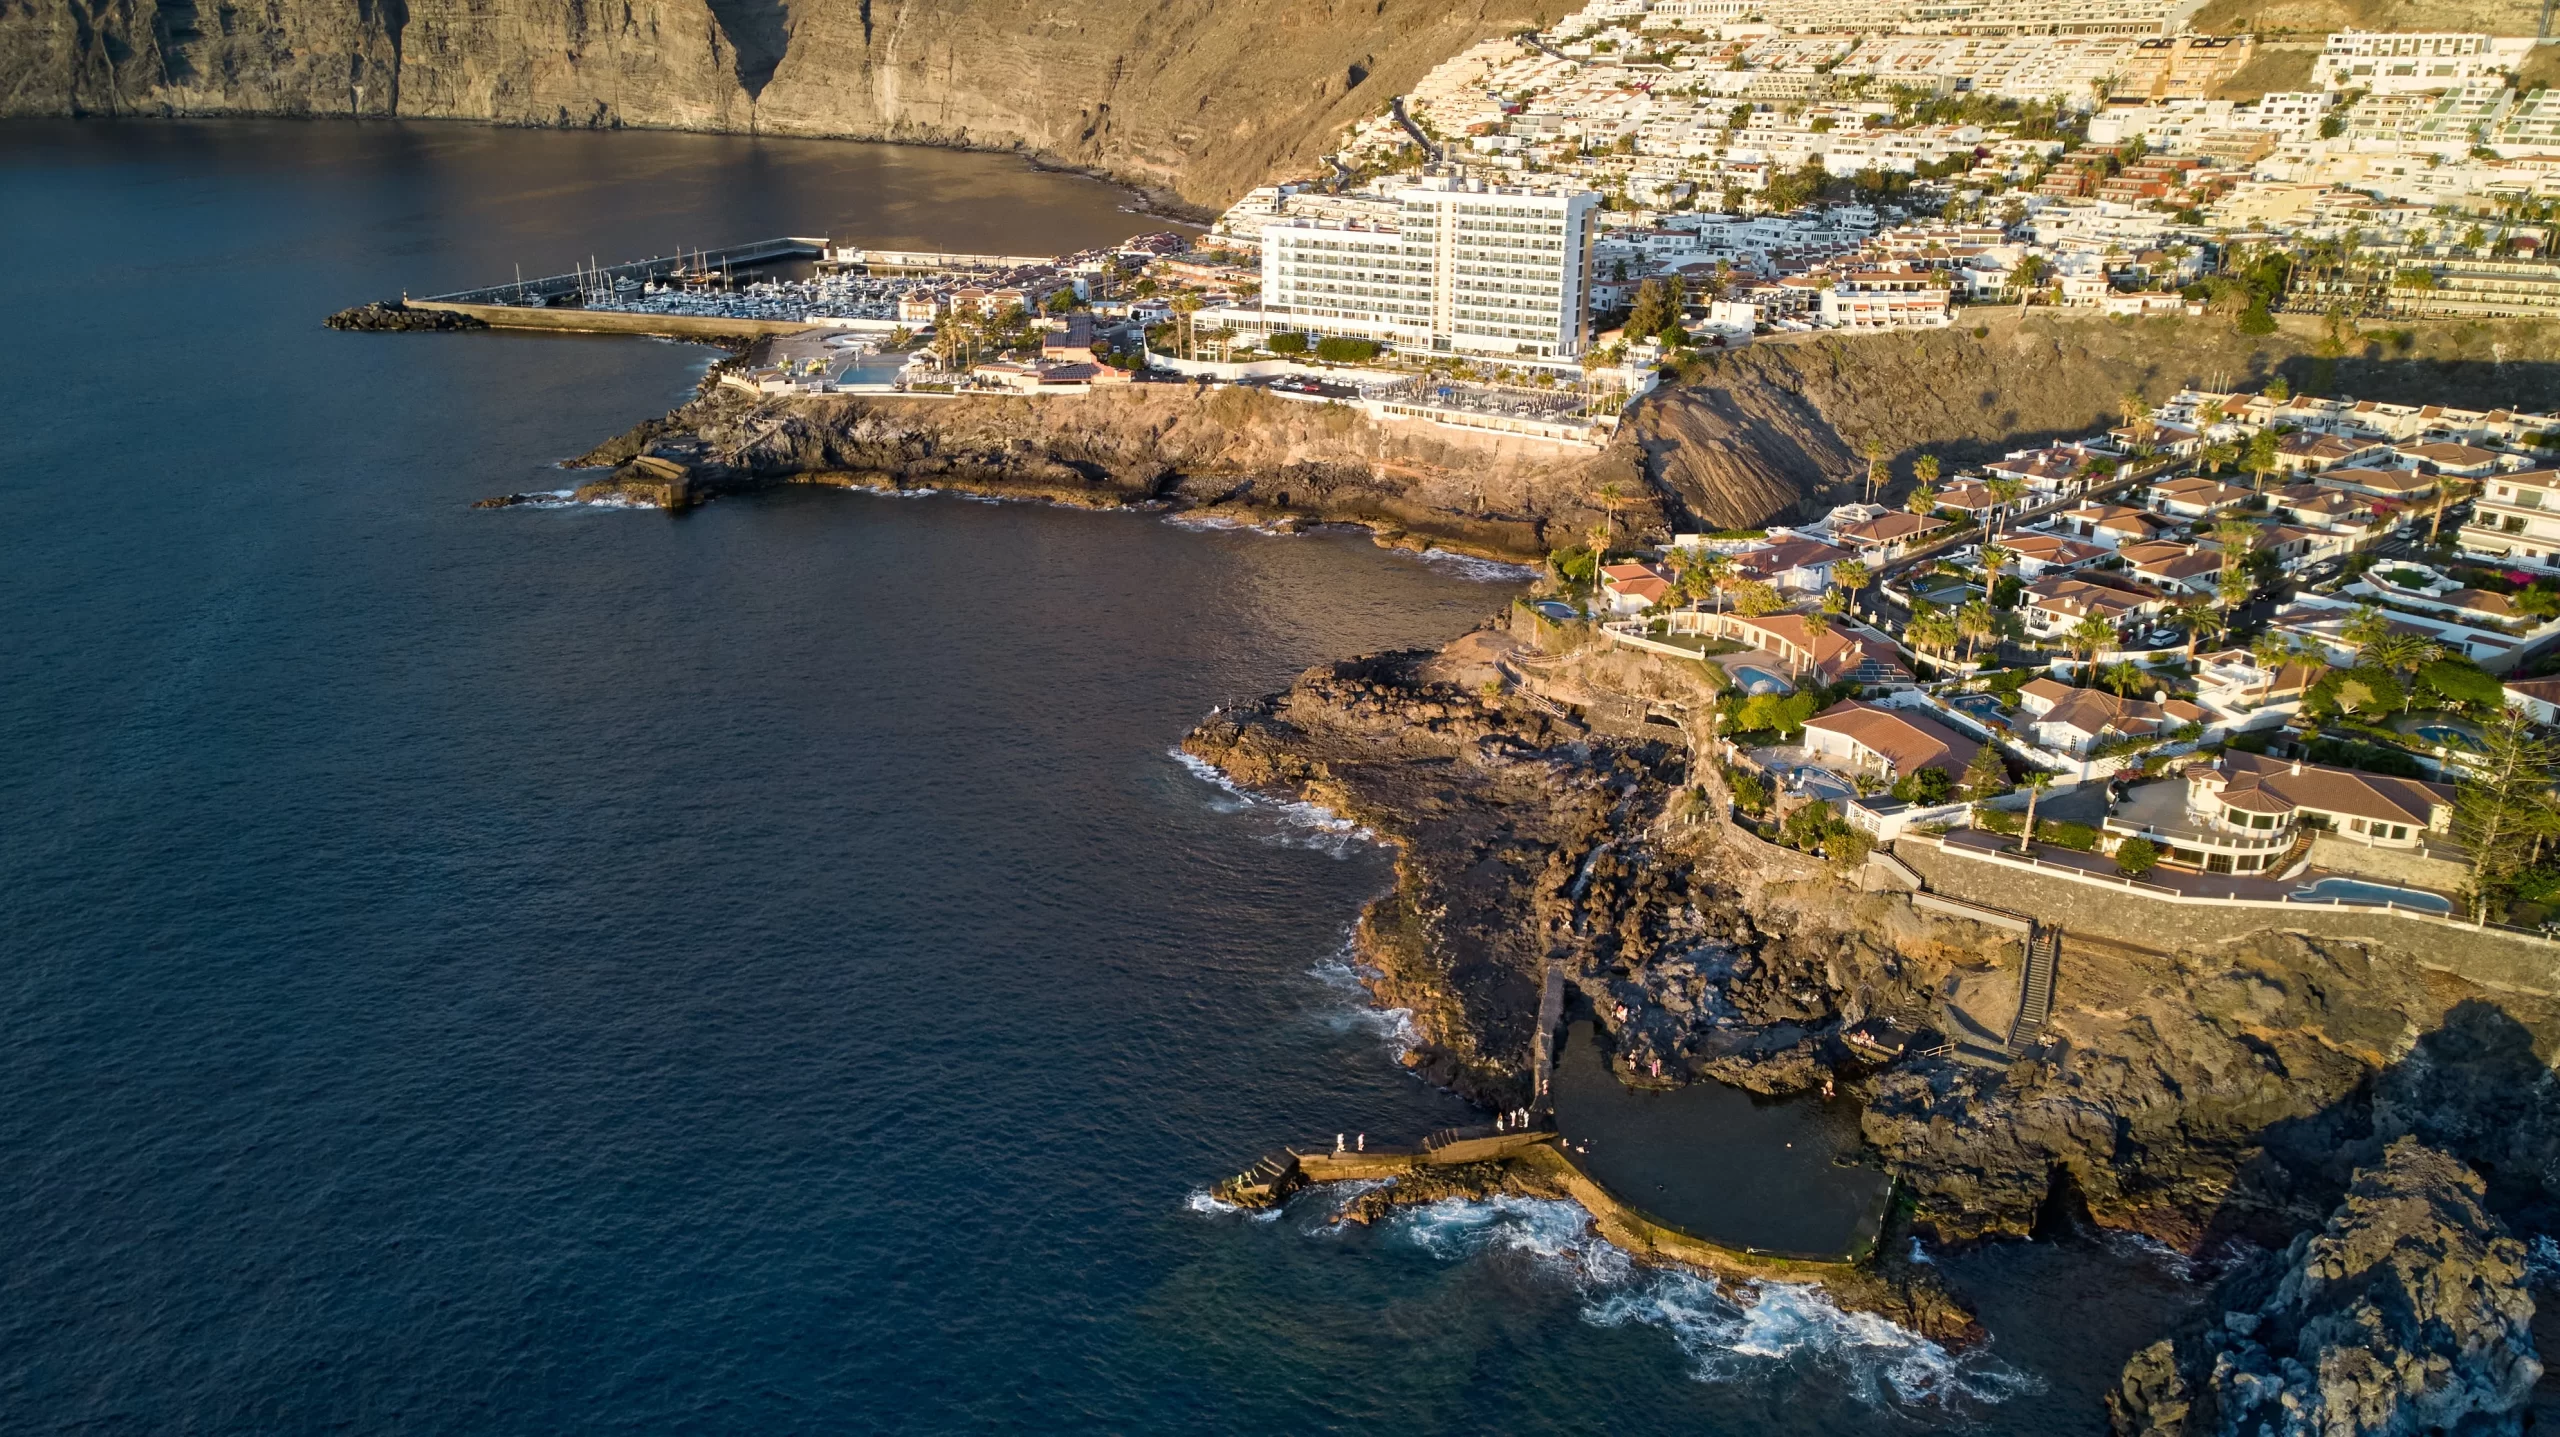 Costos de la vida en la Isla de Tenerife